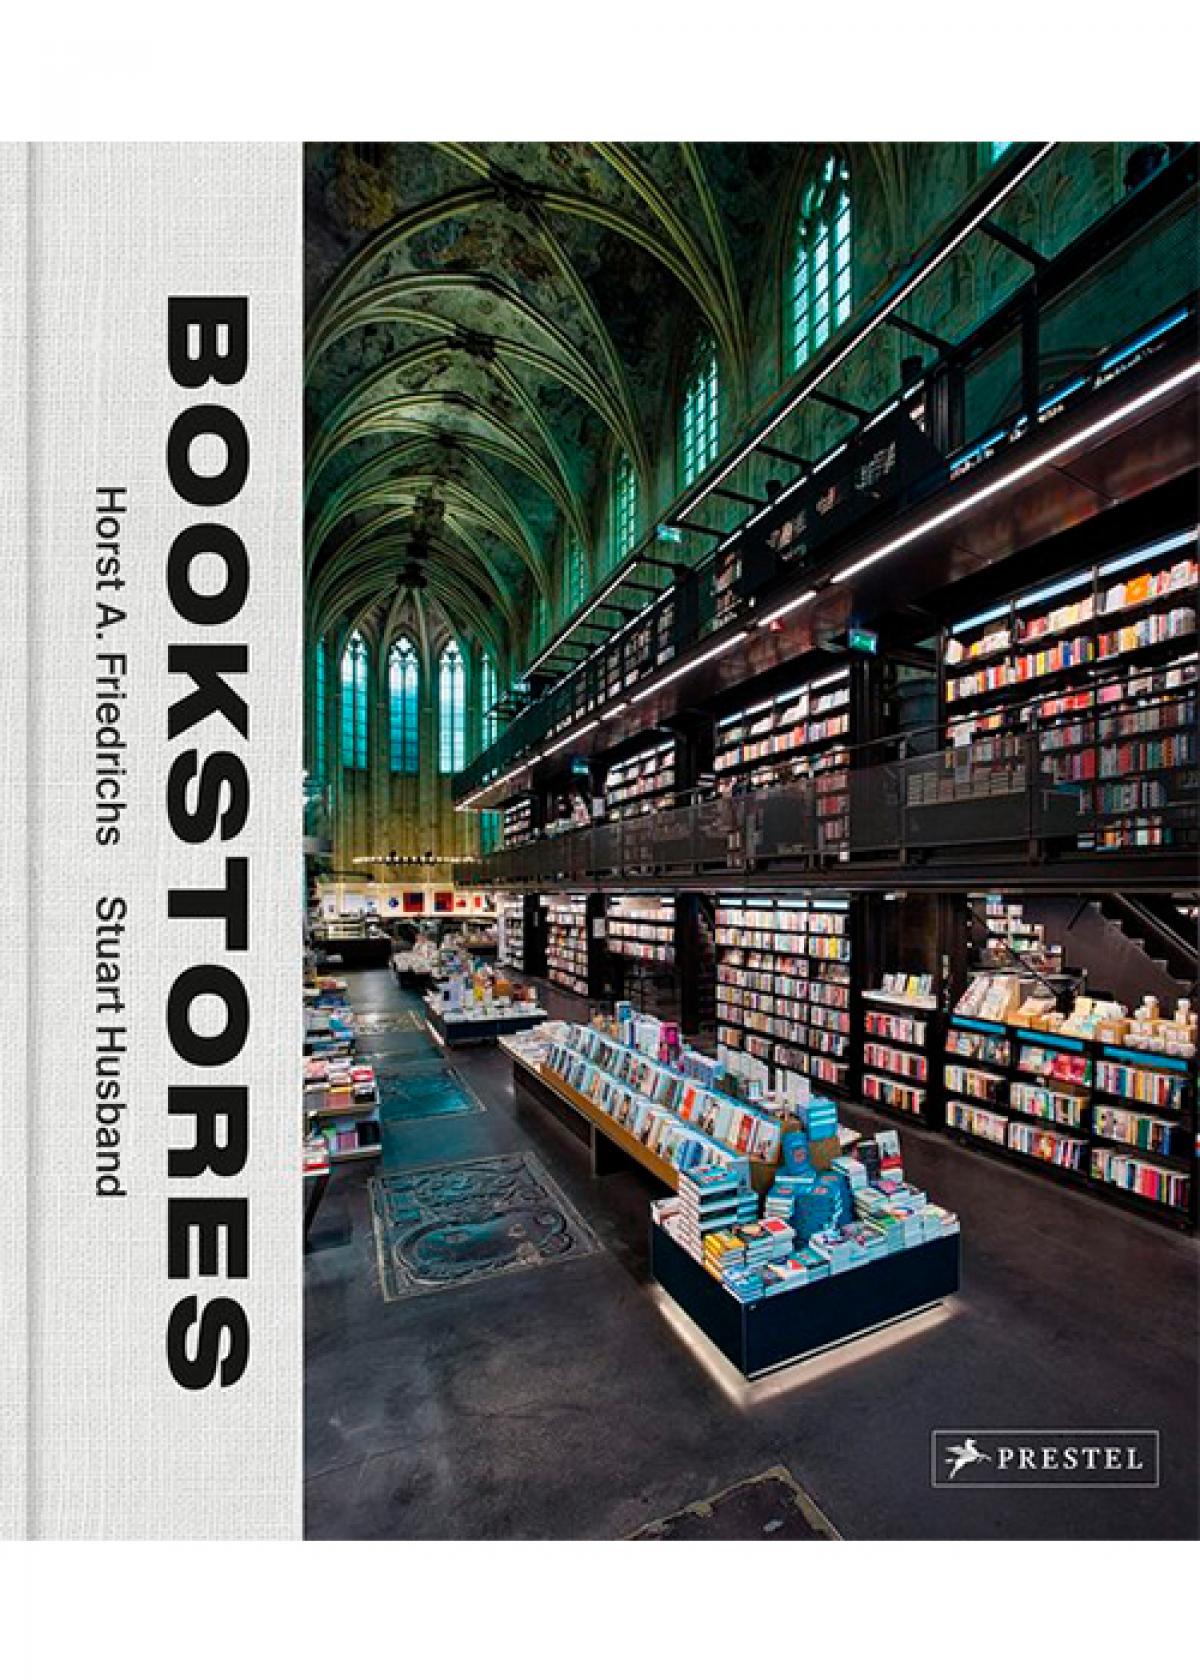 Boek met de mooiste boekenwinkels